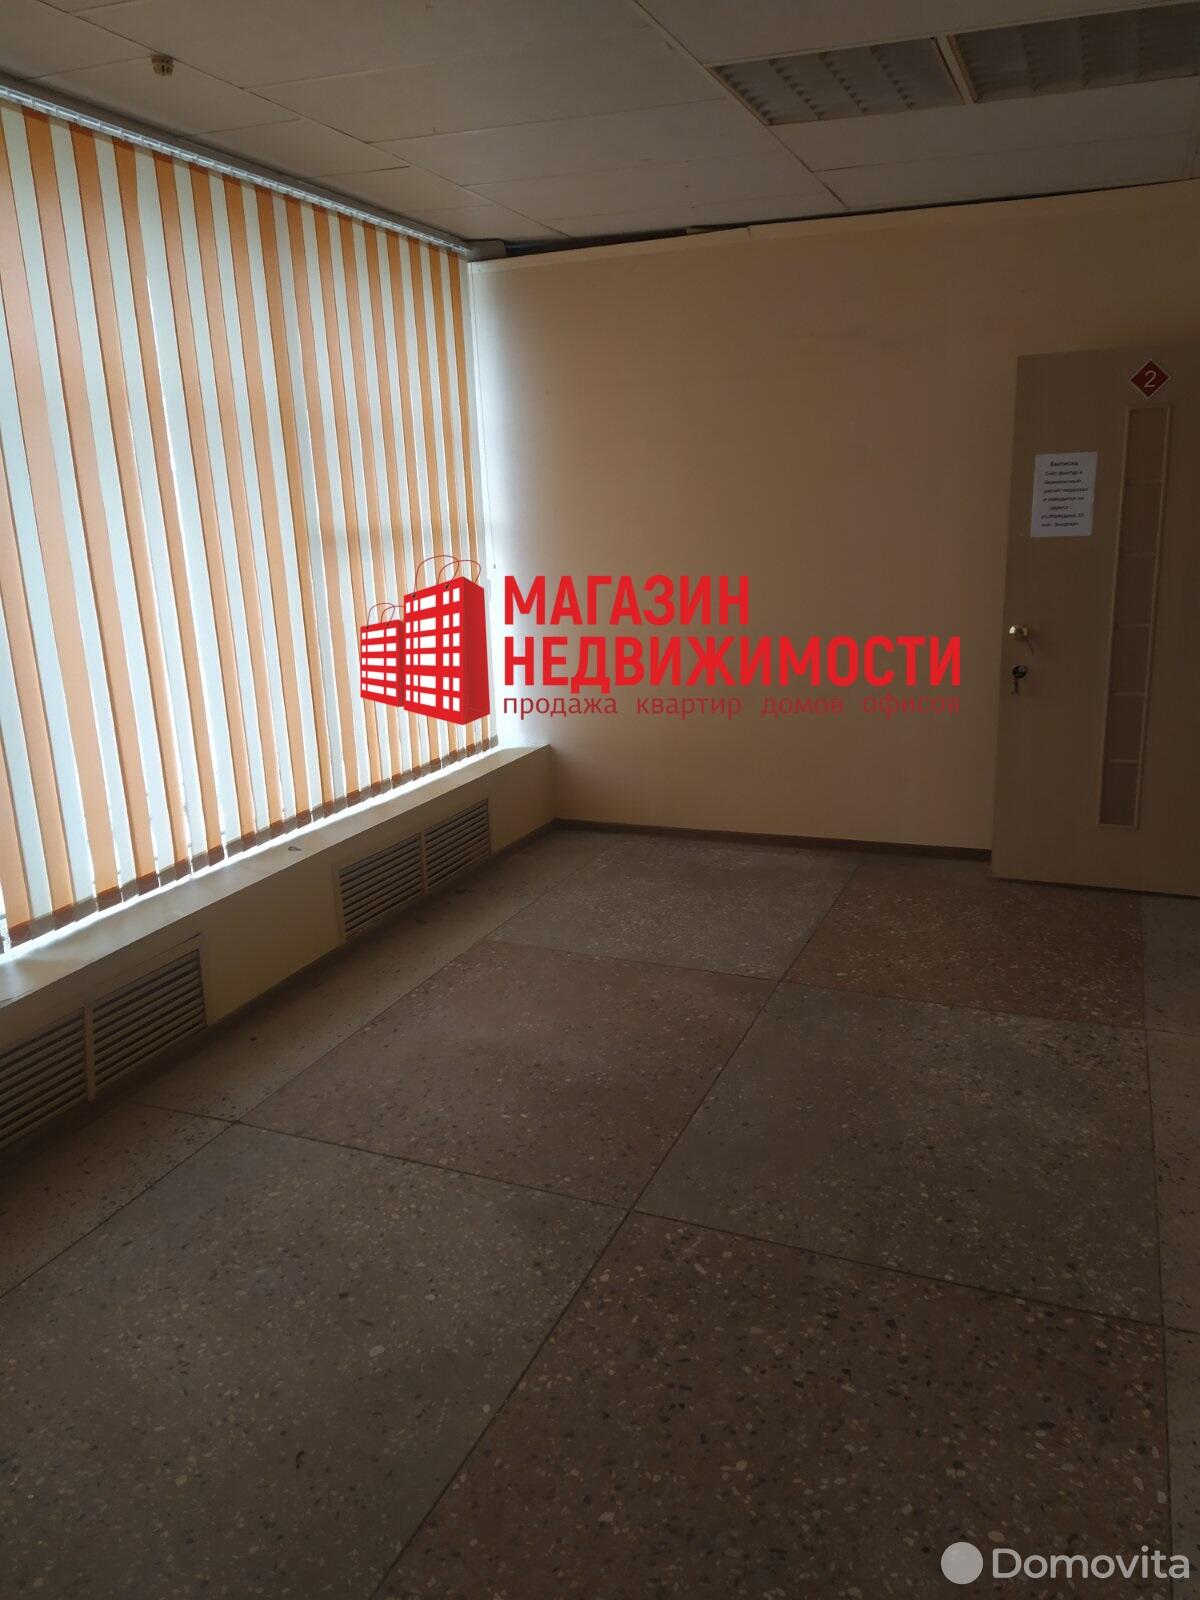 офис, Волковыск, ул. Жолудева, д. 135А, стоимость аренды 5 630 р./мес.